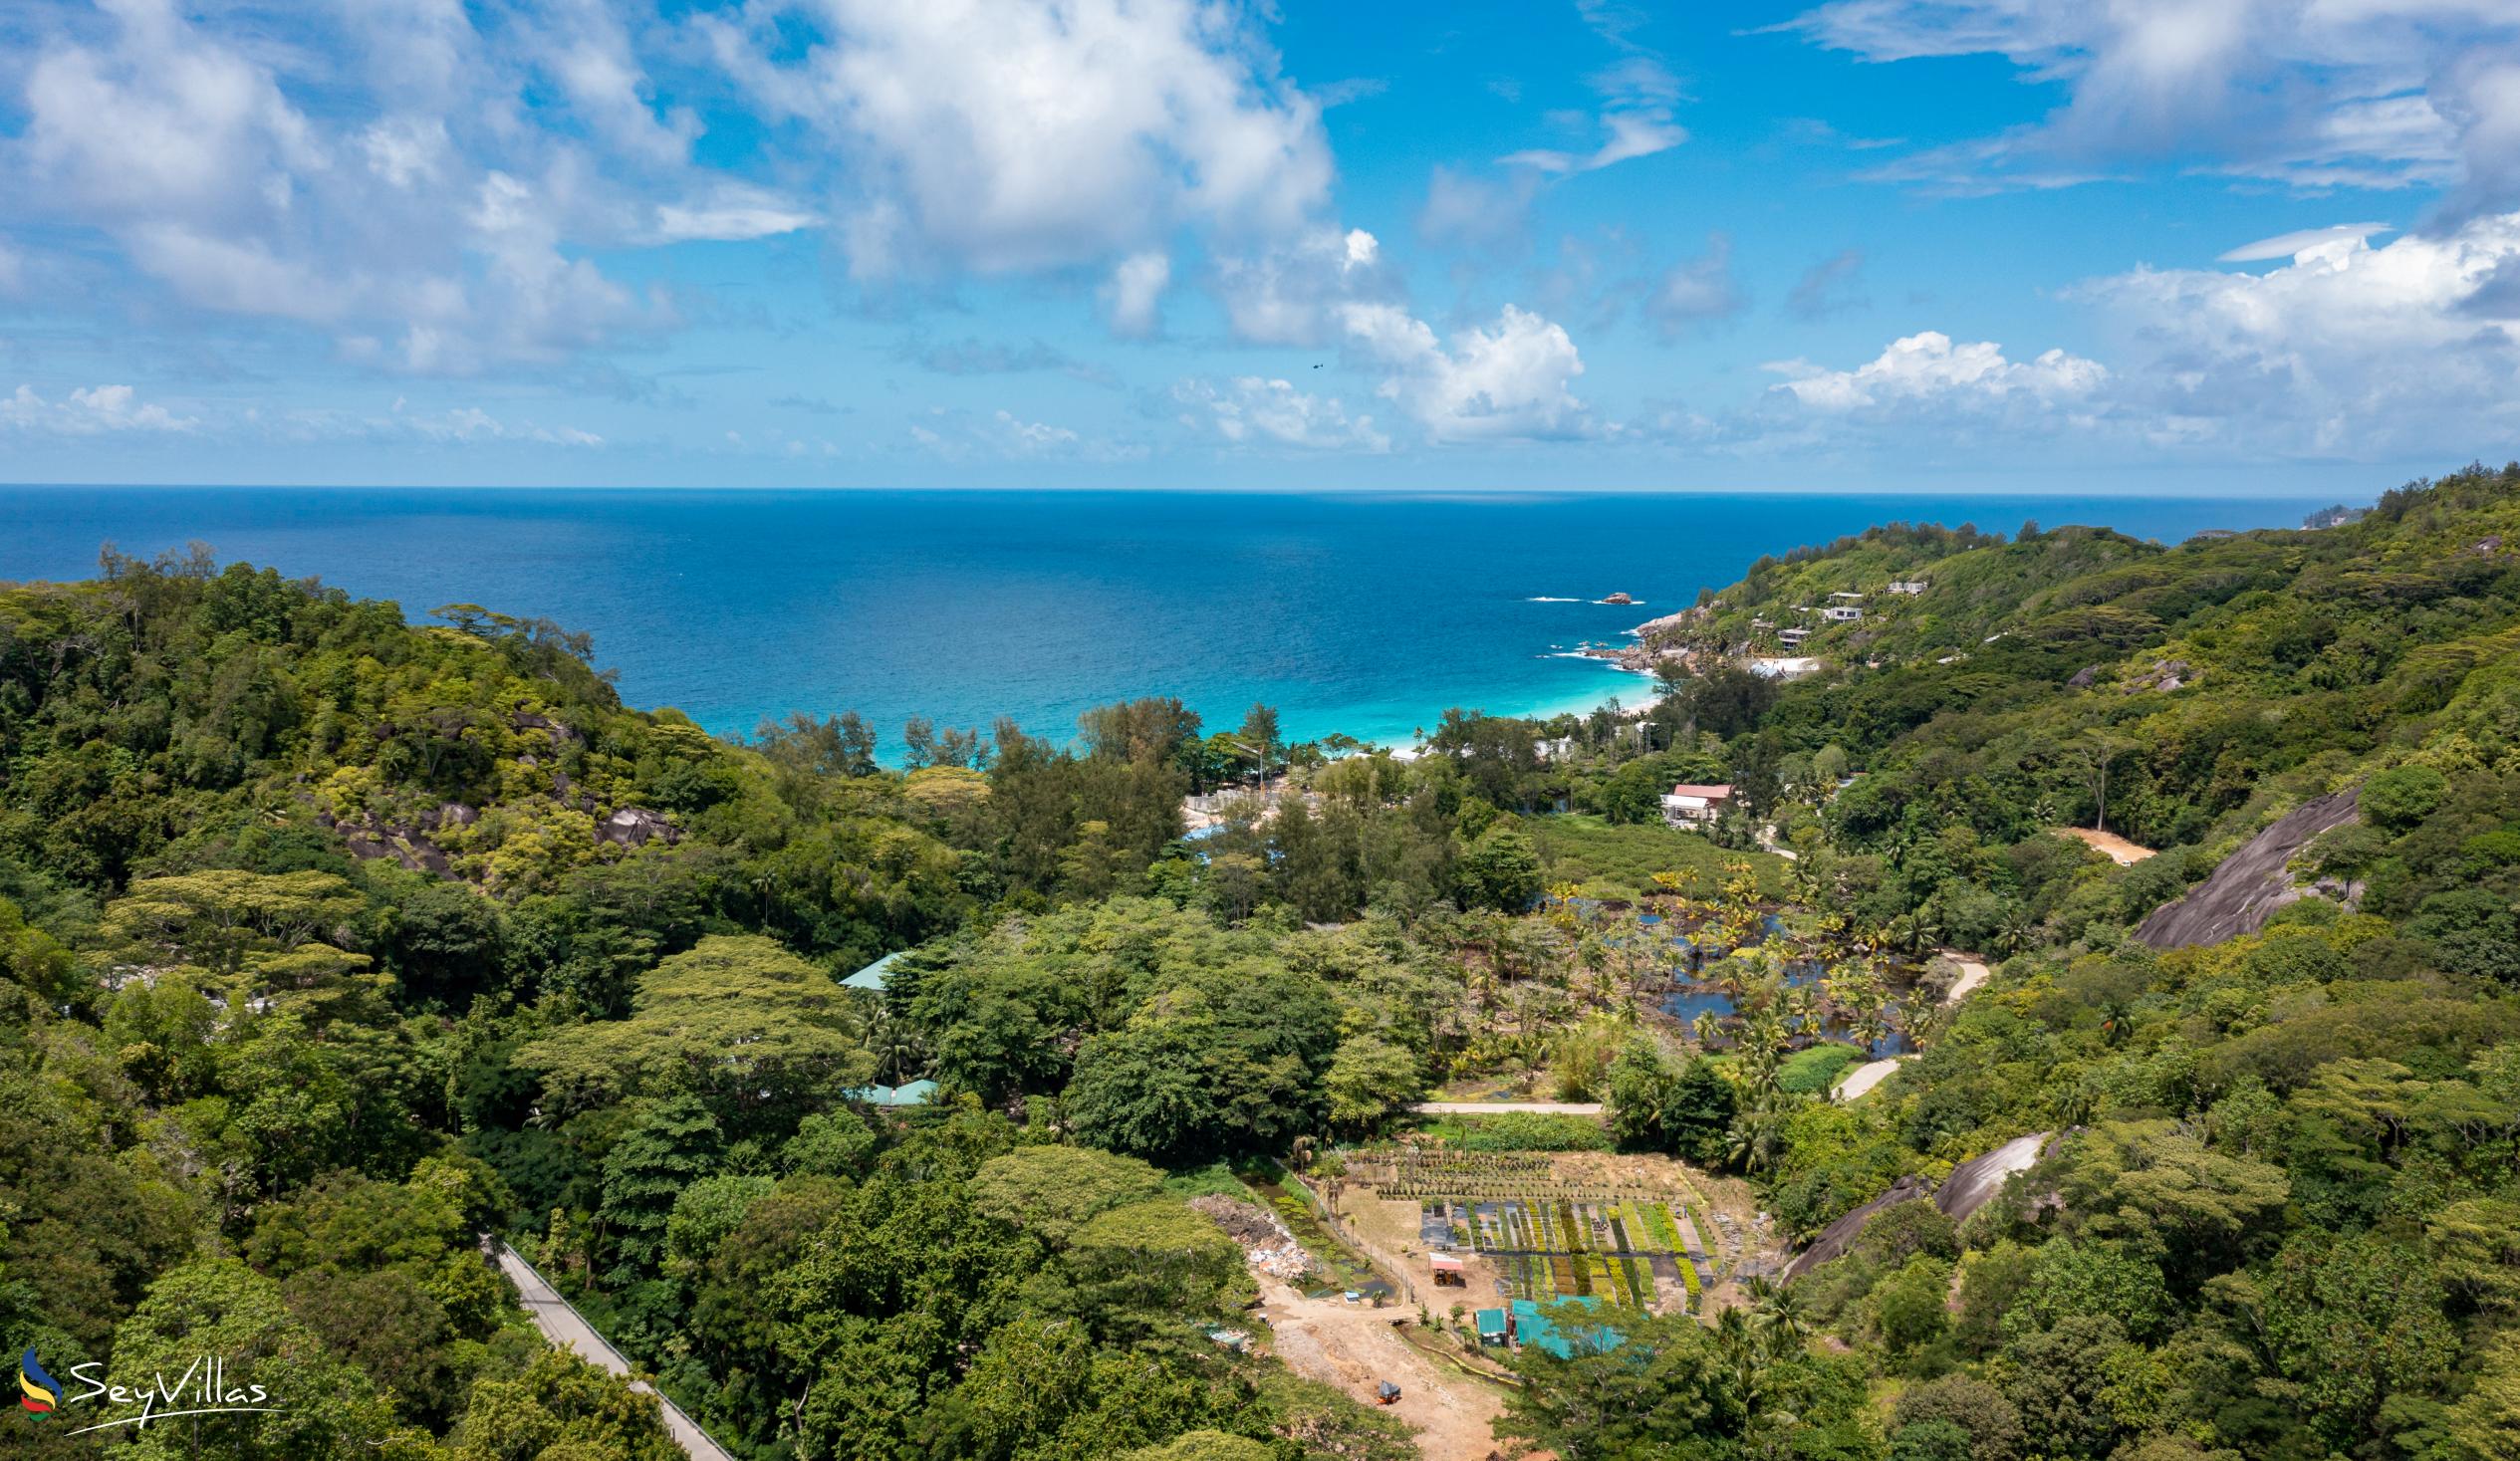 Foto 24: Takamaka Sky Villas - Location - Mahé (Seychelles)